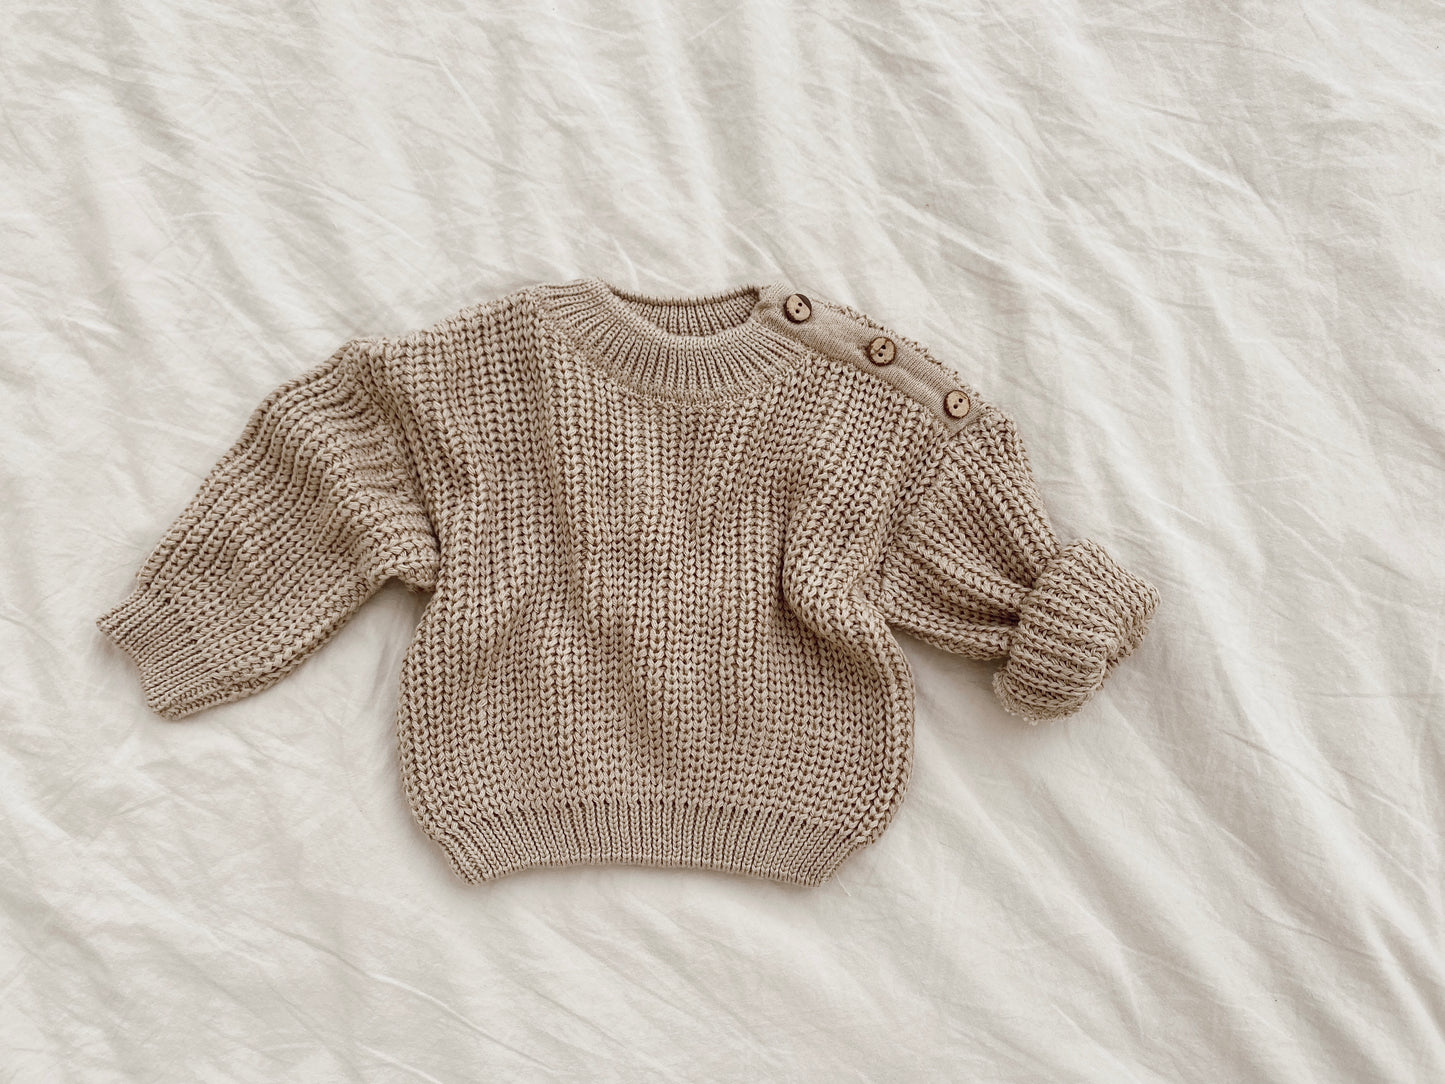 Newborn sweater in dark beige with buttons